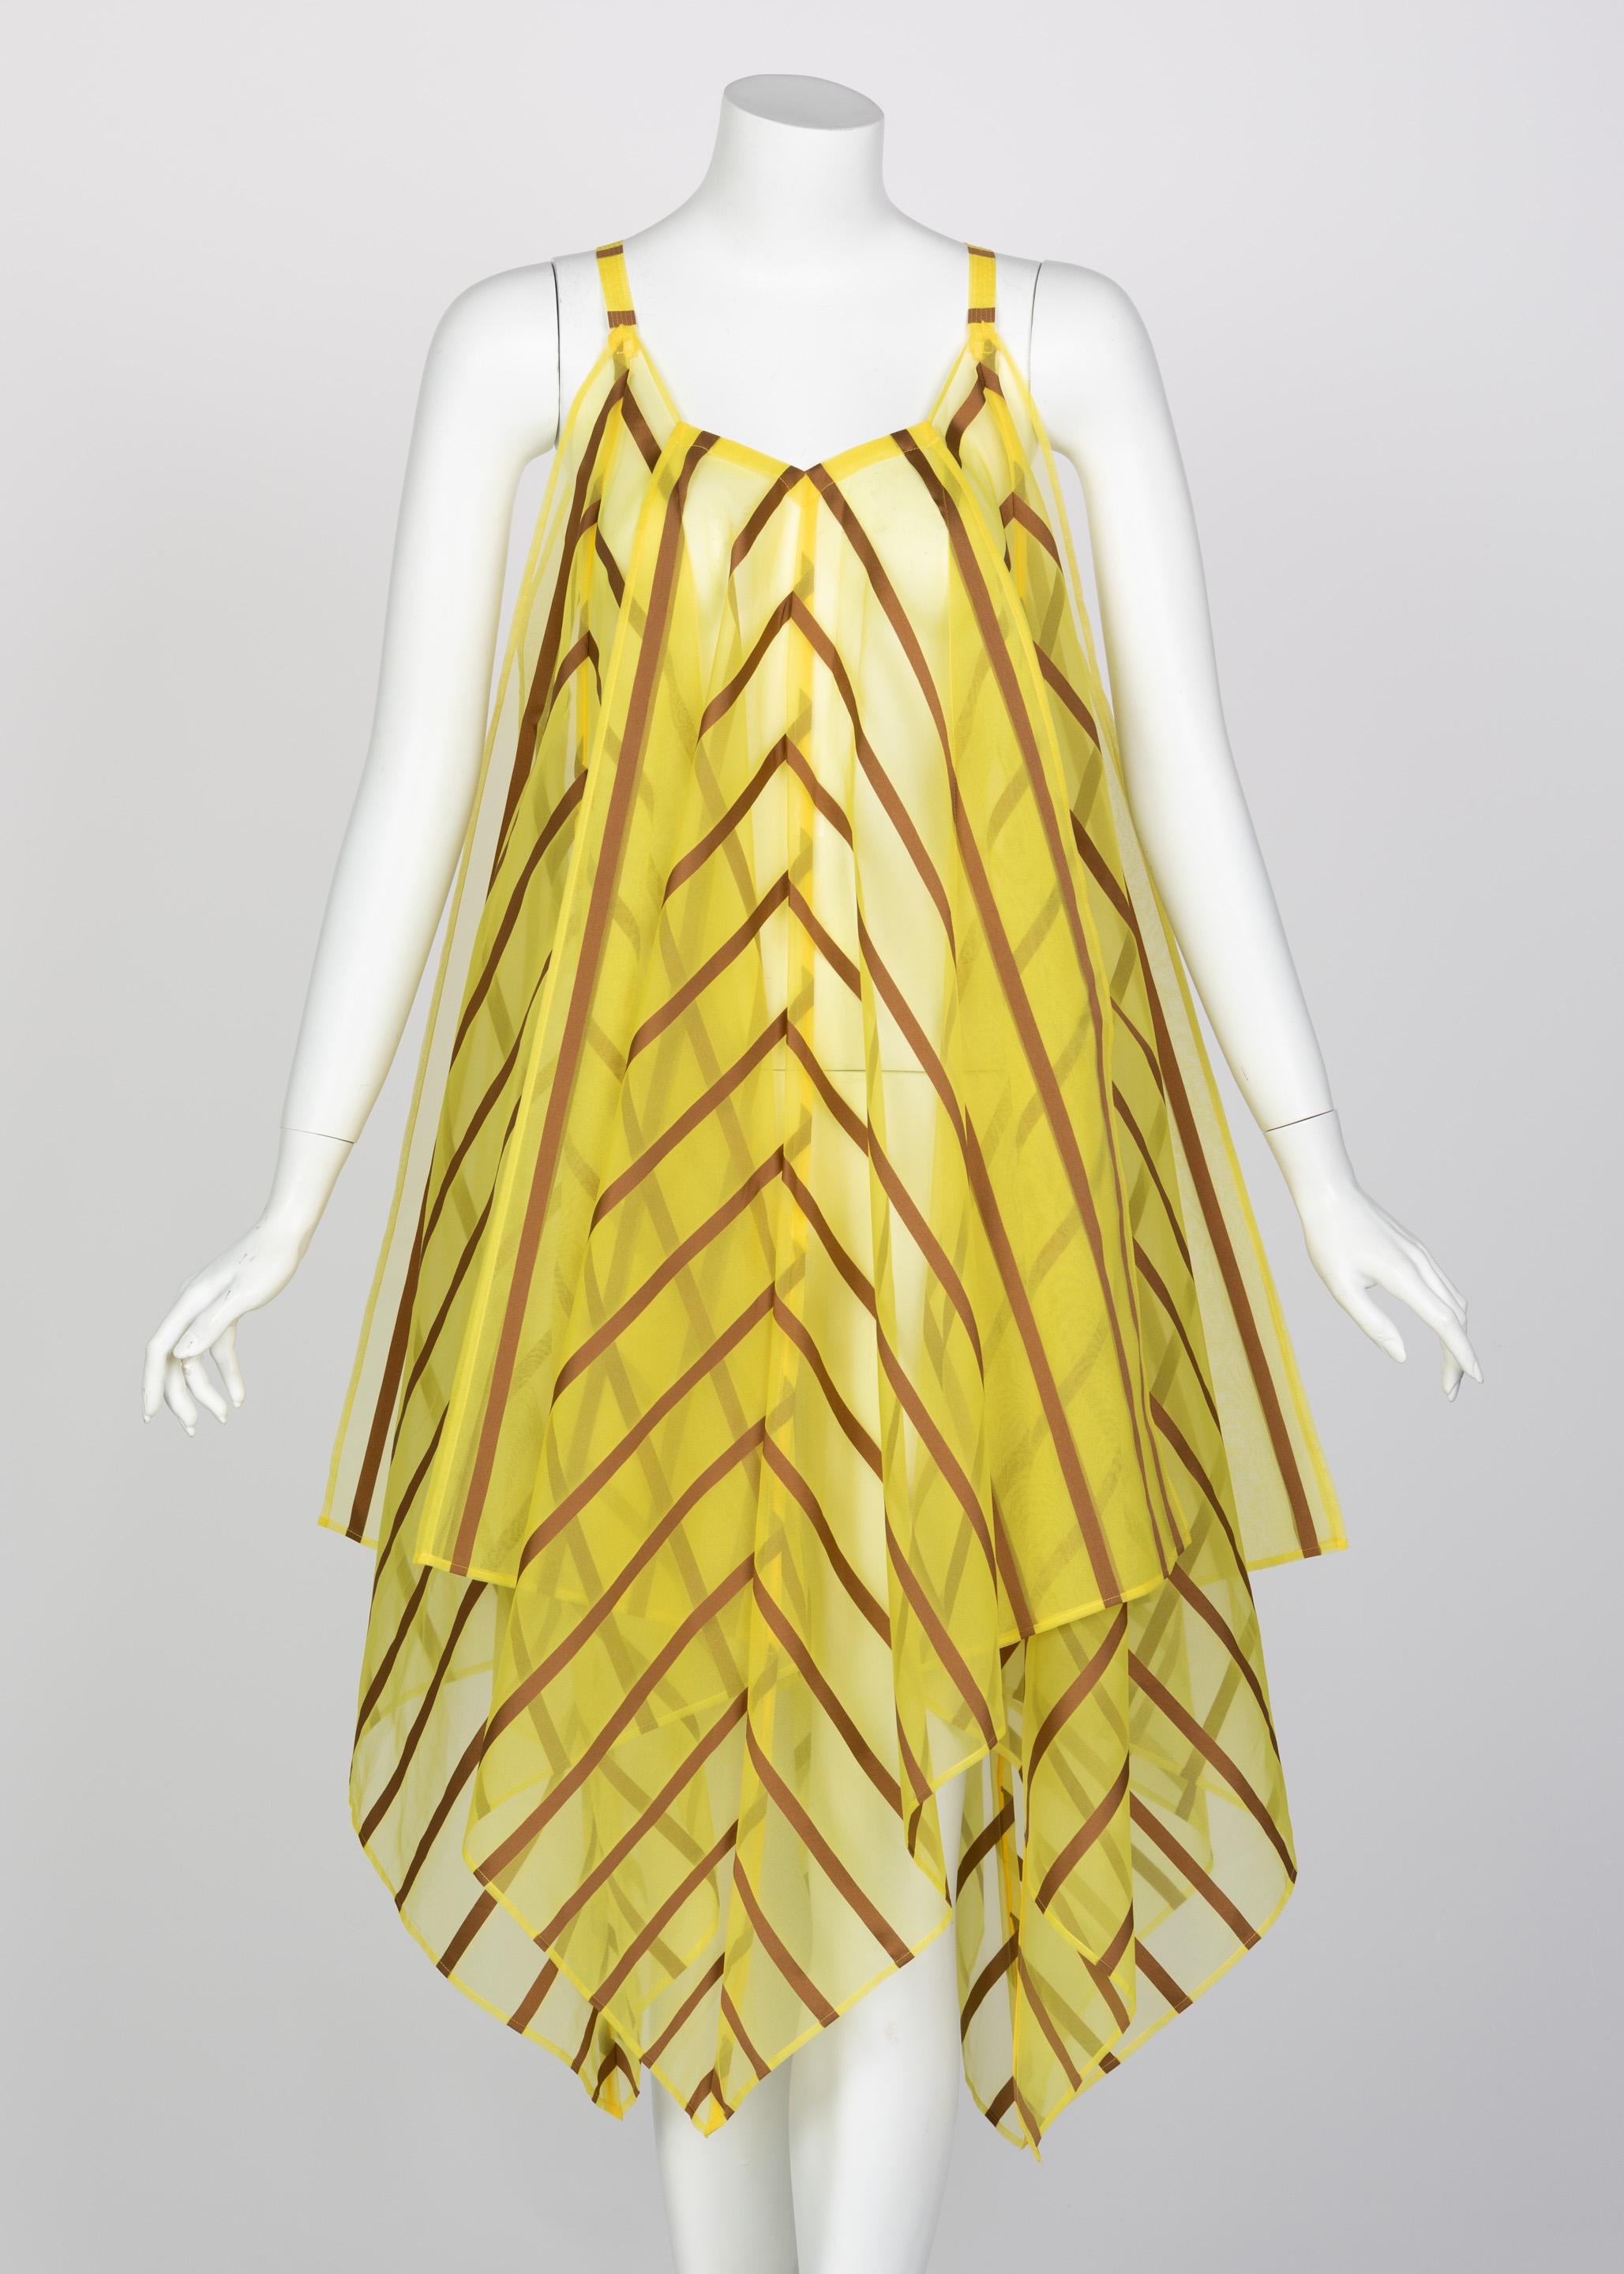 Gleichgewicht. Einfache Merkmale. Präzision. So sehr Issey Miyake für seine architektonischen Modewunder bekannt ist, seine Entwürfe sprechen auch durch kalkulierte Schlichtheit Bände. Dieses Kleid ist aus leuchtend gelbem Organza gefertigt und mit